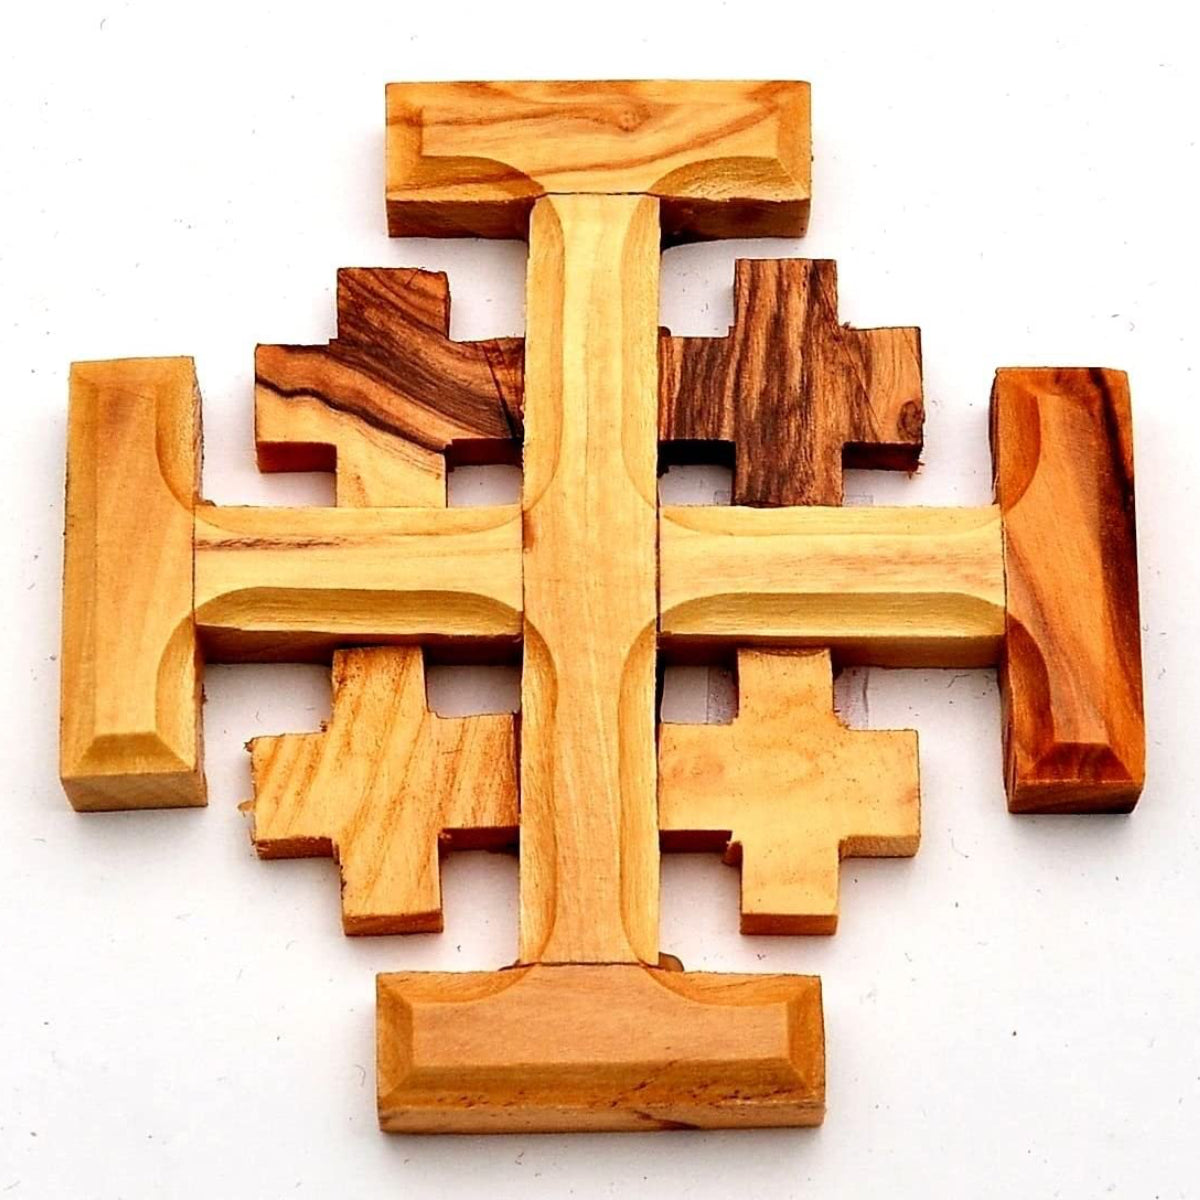 Jerusalem Olive Wood Cross Made in Bethlehem